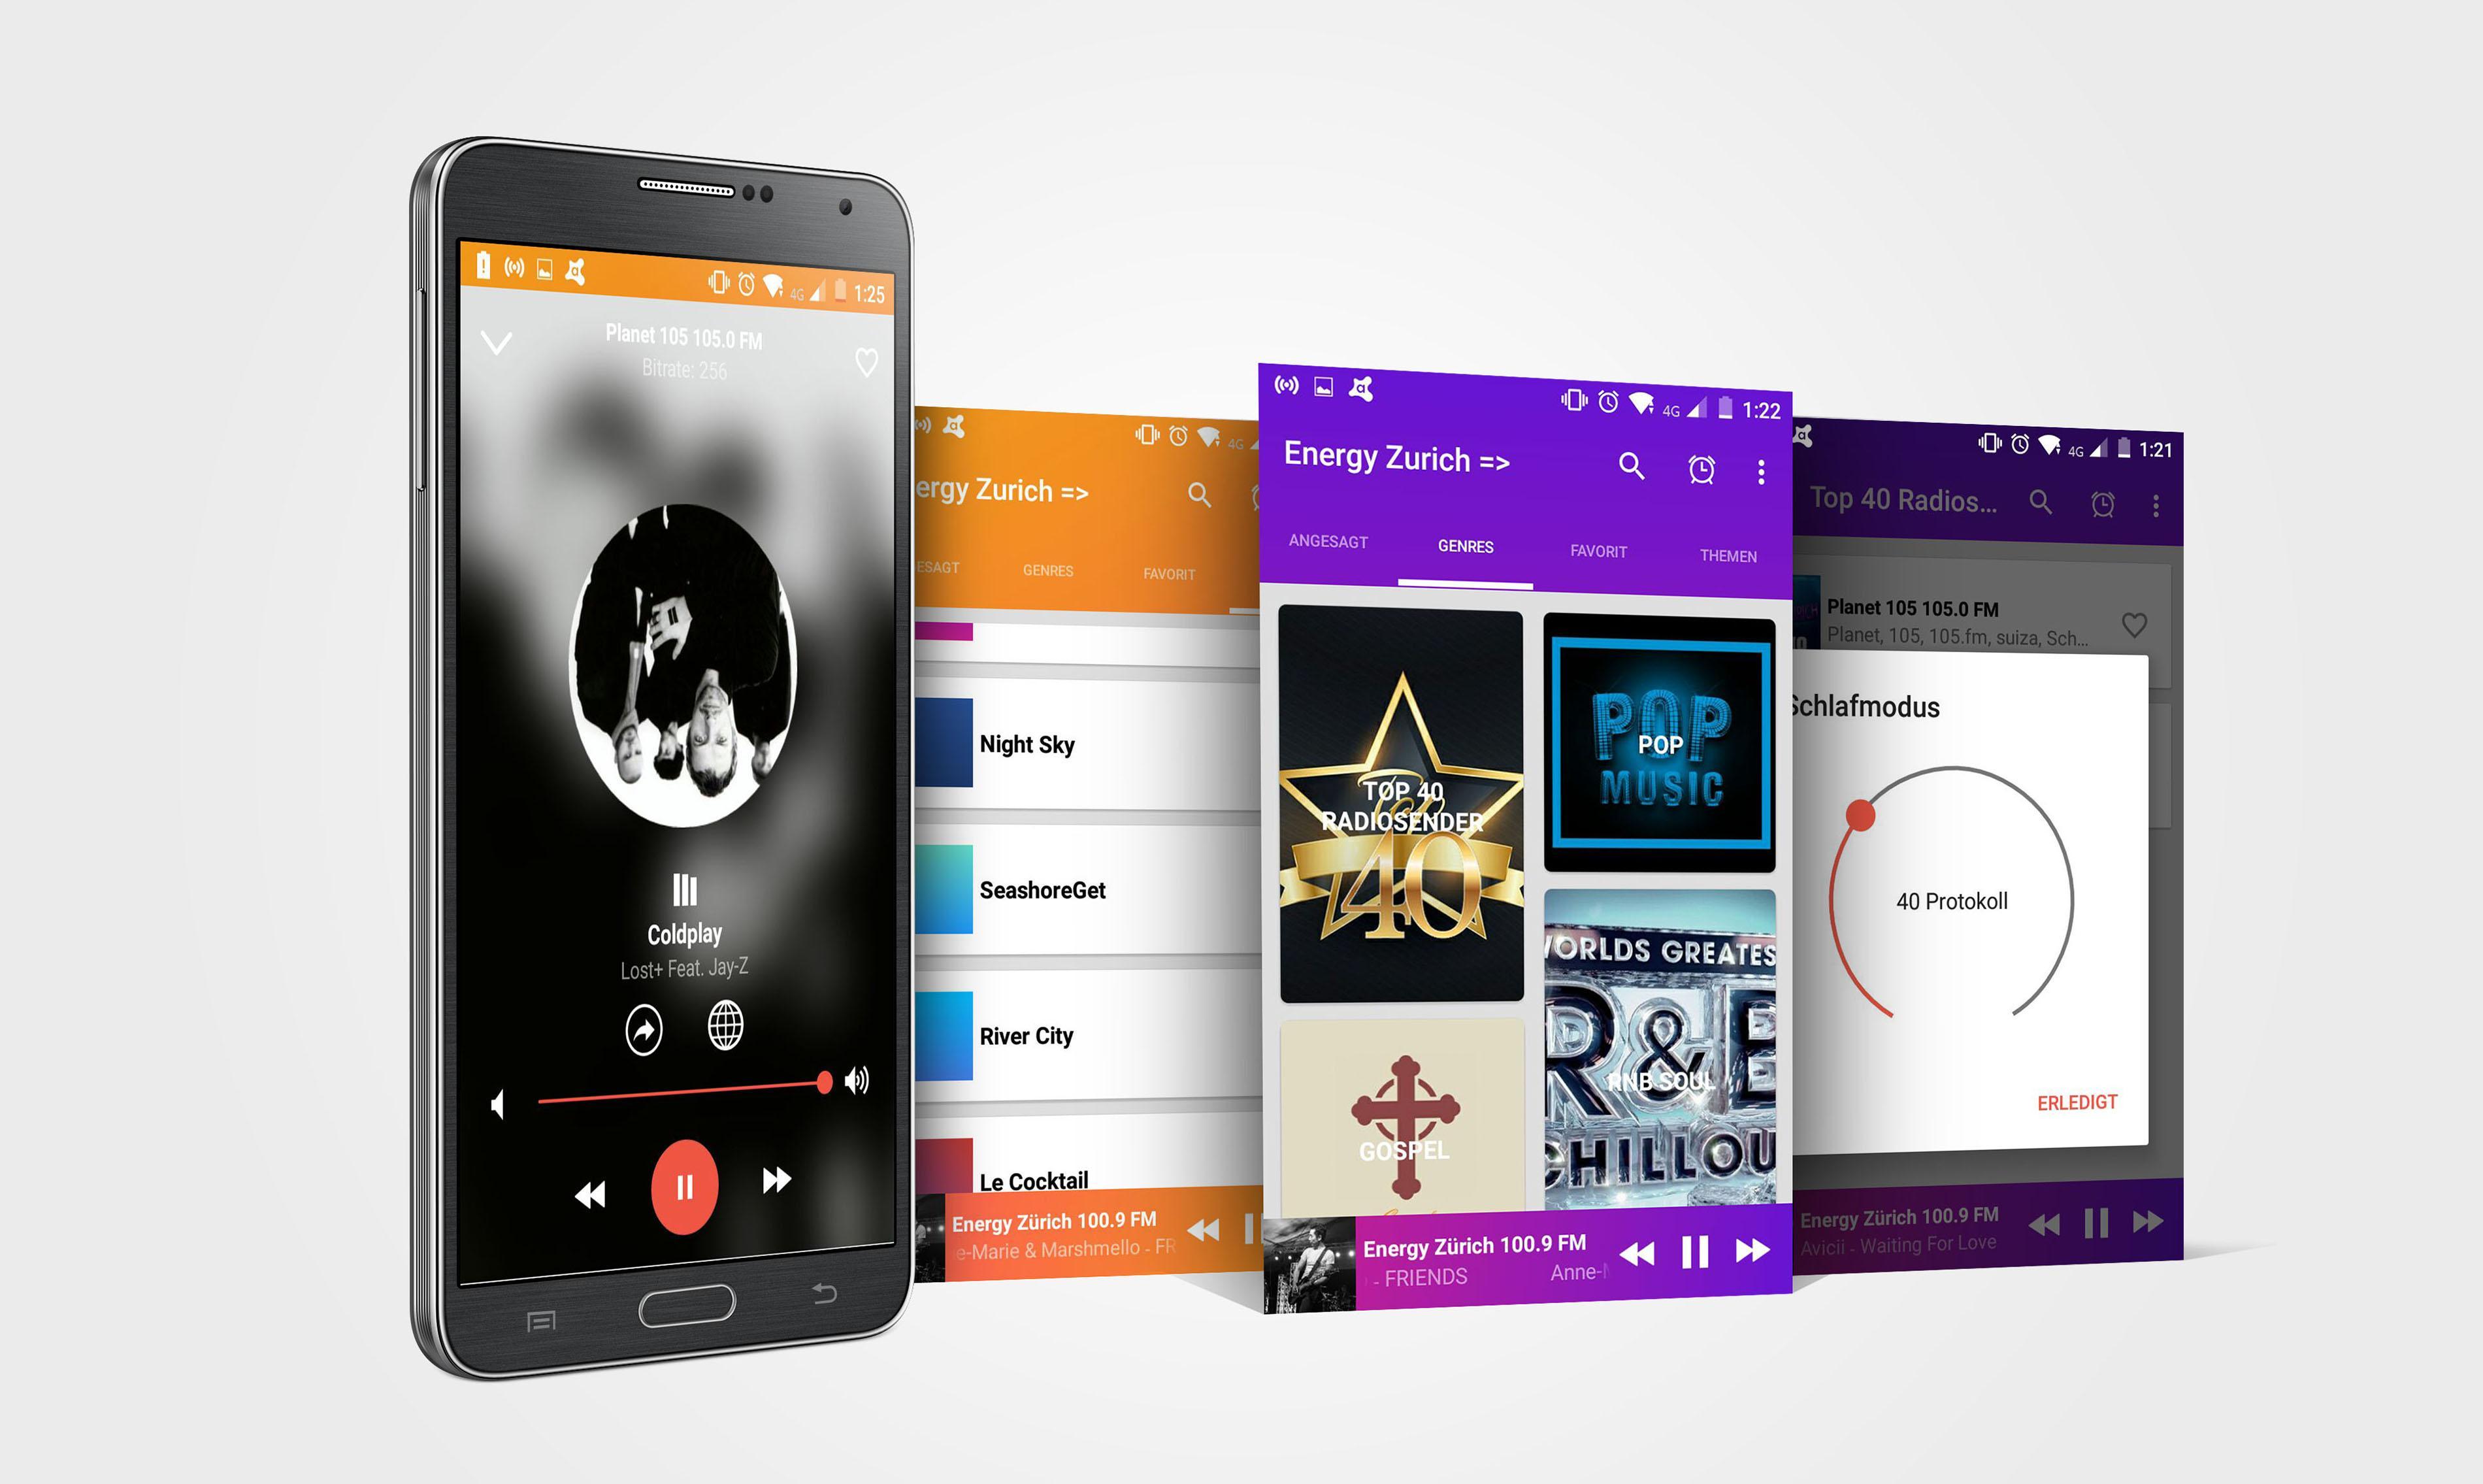 1 FM Absolute Trance Radio 1FM APK pour Android Télécharger